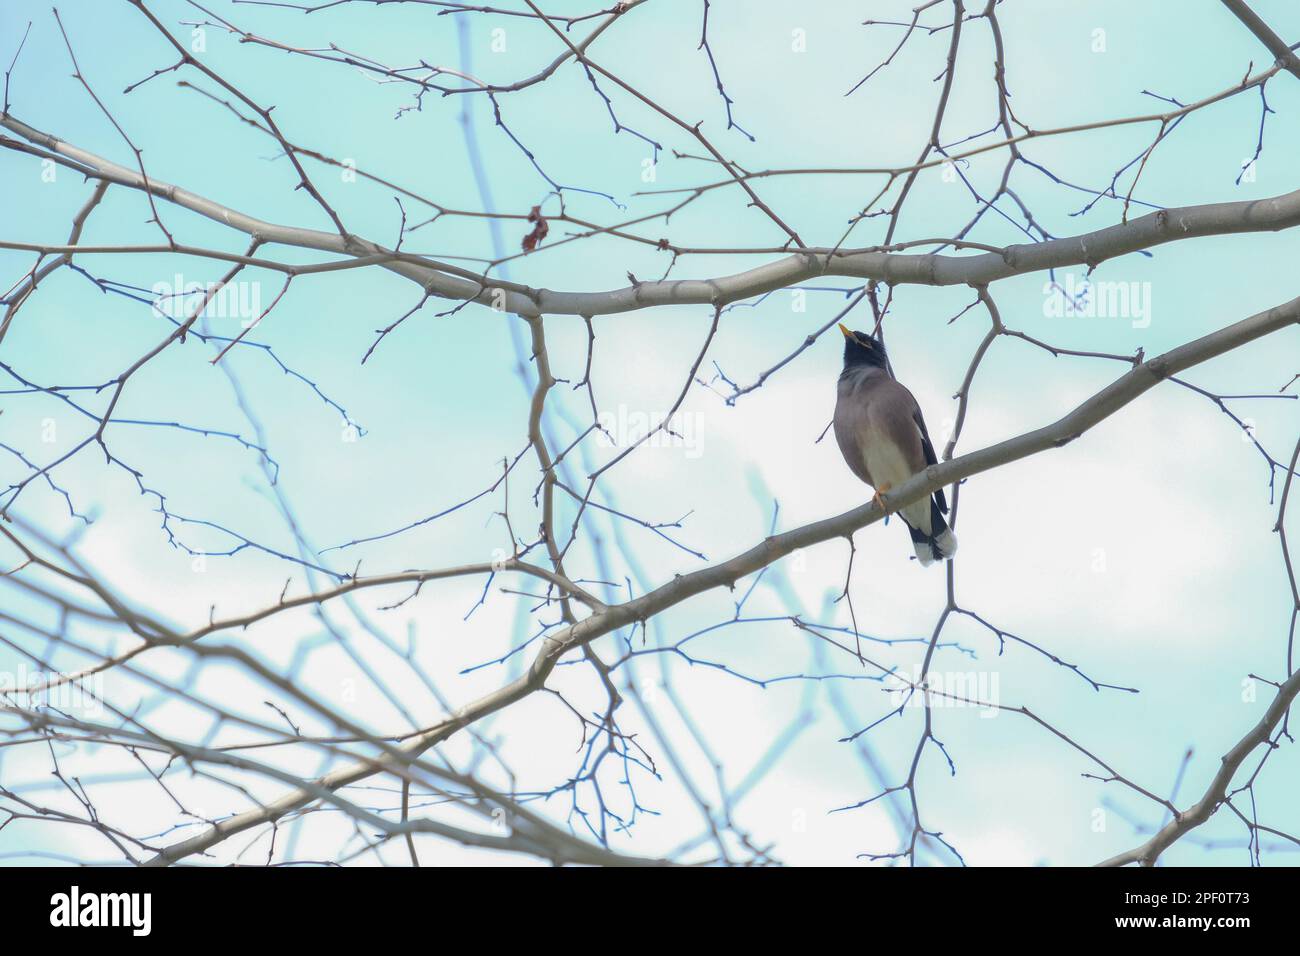 Nahaufnahme von Straunidae Vogel auf dem Ast des Baumes mit Himmelshintergrund. Sturnidae Vogel im Gulhane Park in Istanbul. Vogelbeobachtung - Konzeptfotografie. Stockfoto